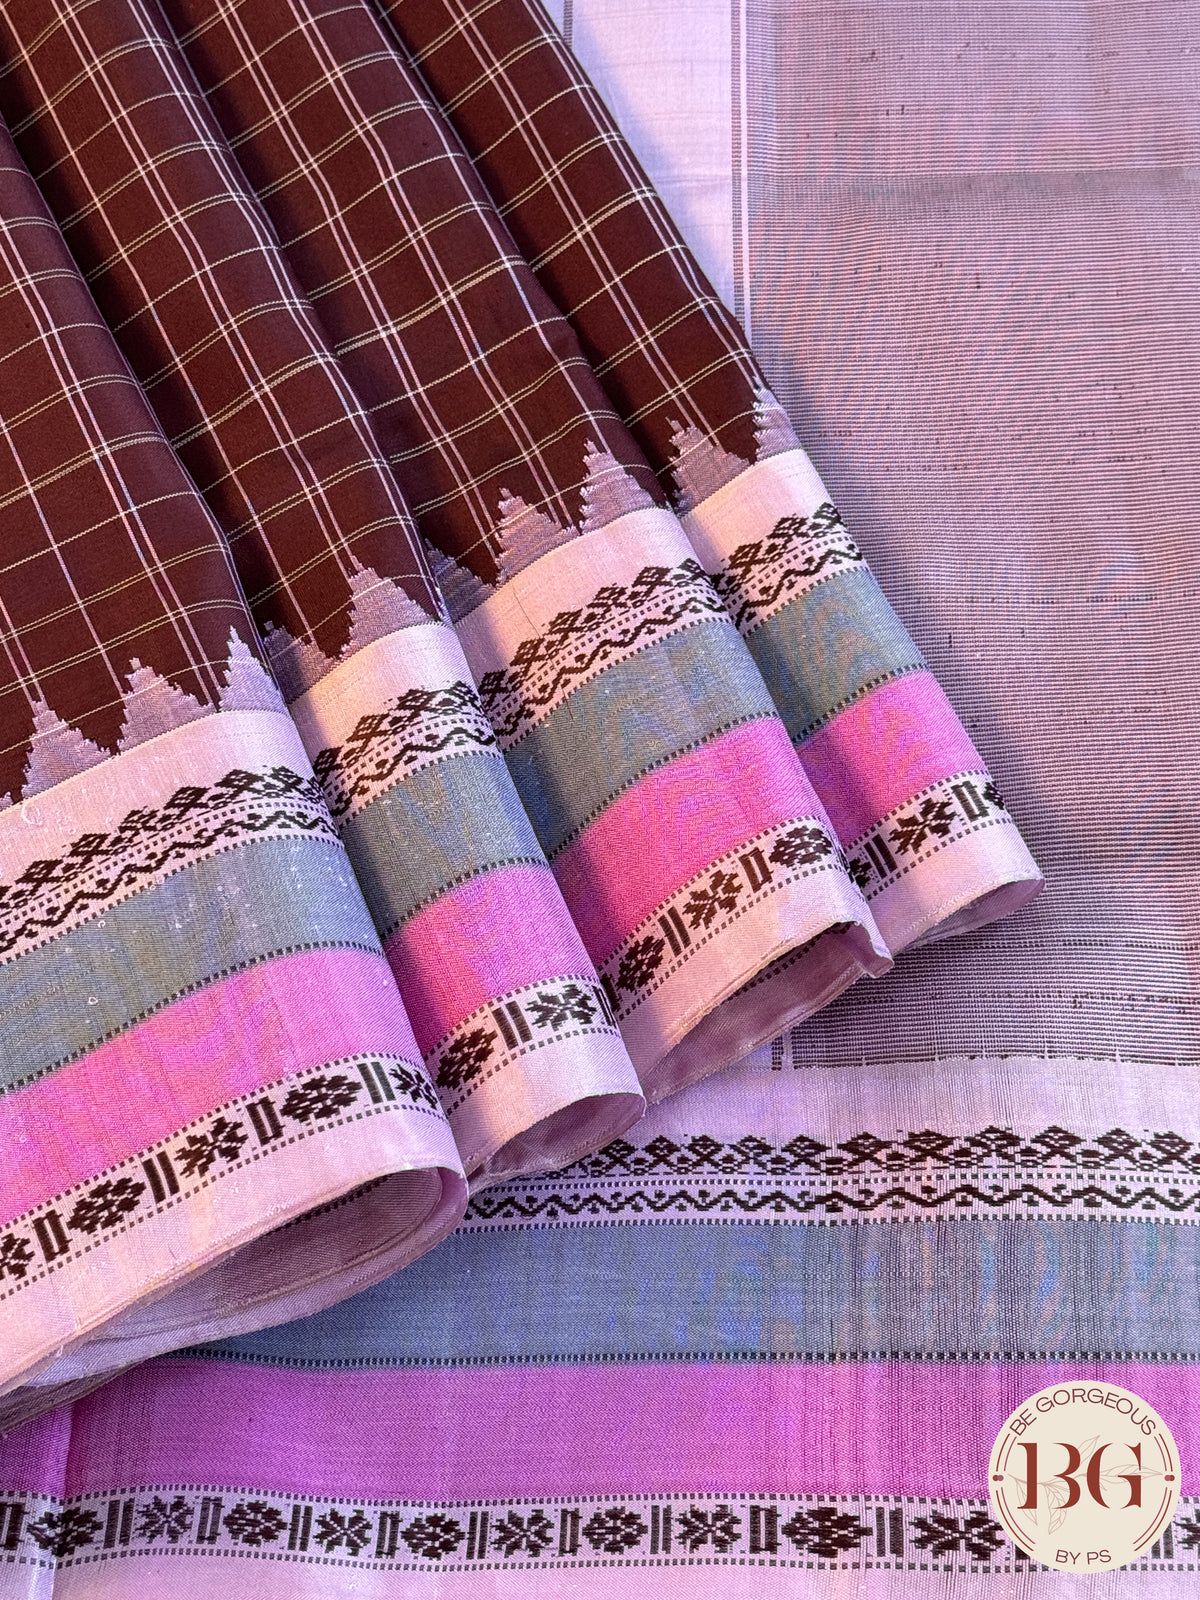 Gadwal handloom pure silk saree - Maroon checker with pink grey pallu and border